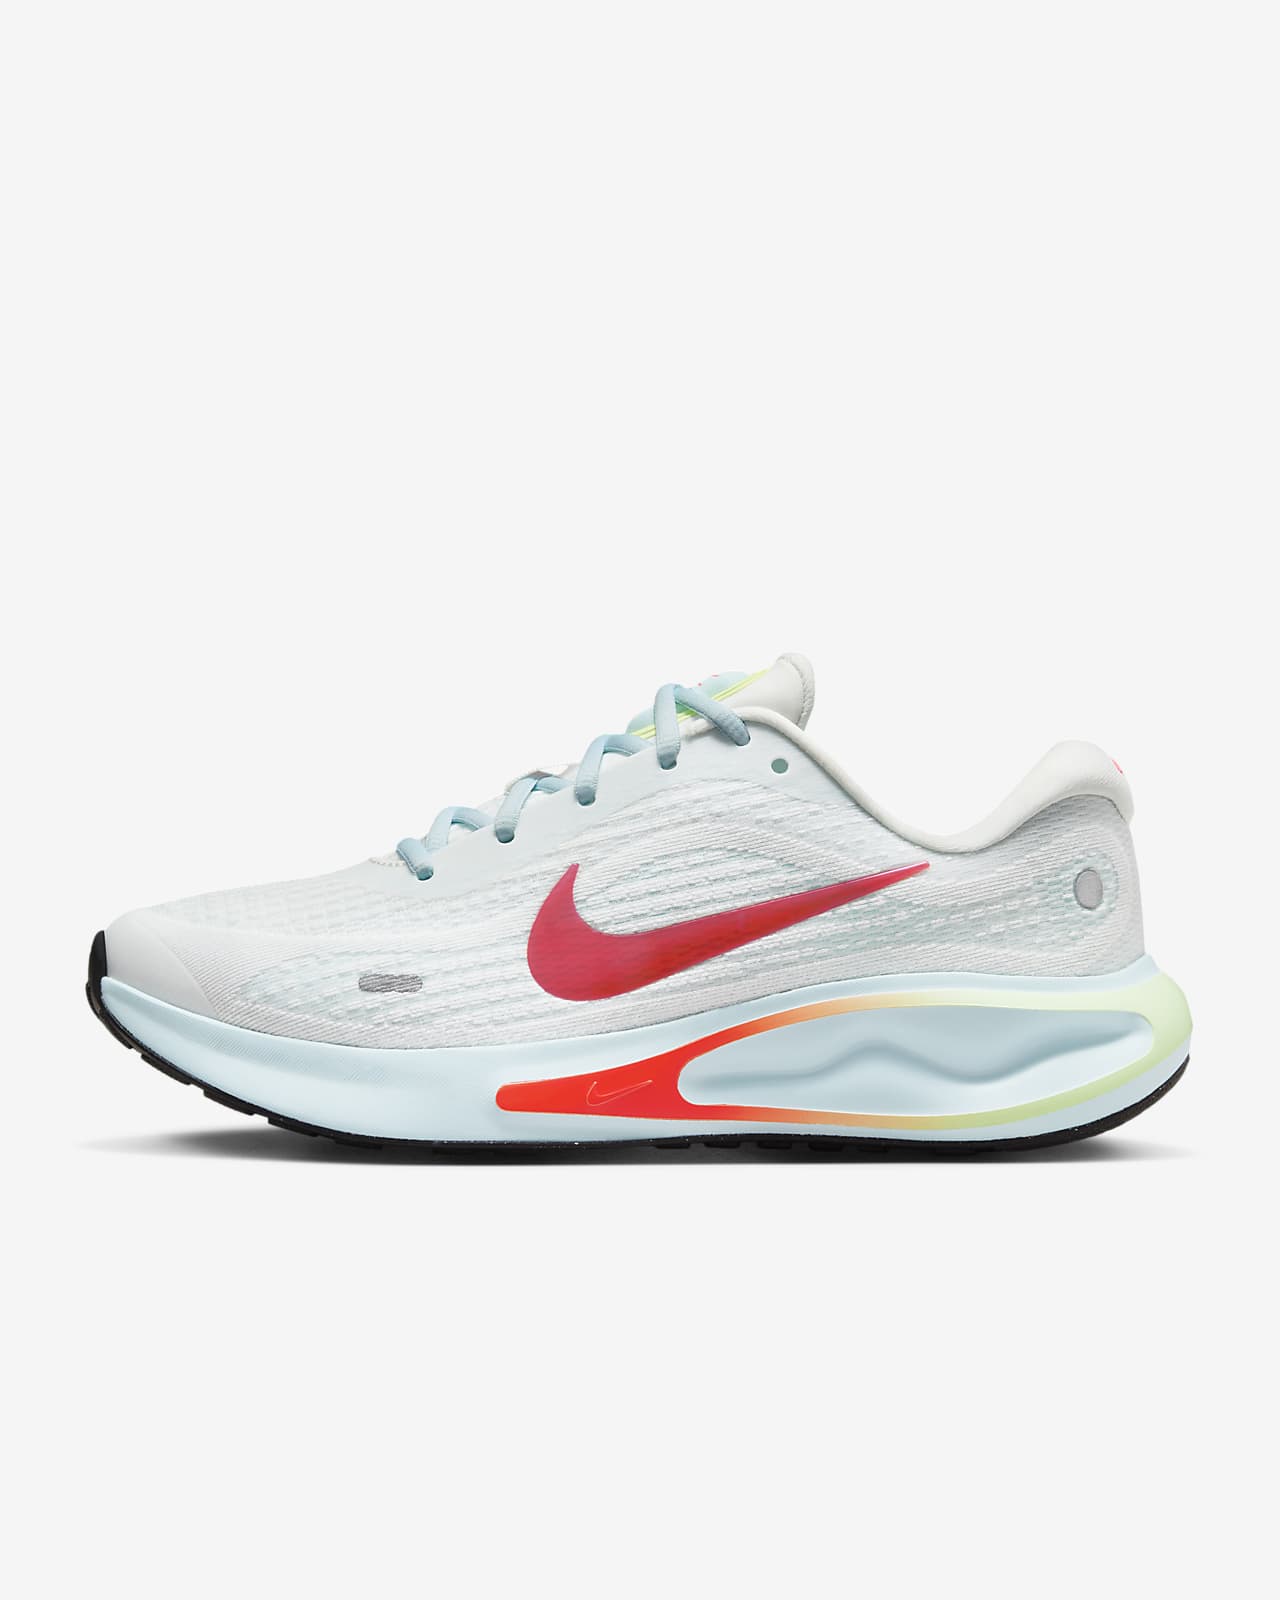 Damskie buty do biegania po asfalcie Nike Journey Run